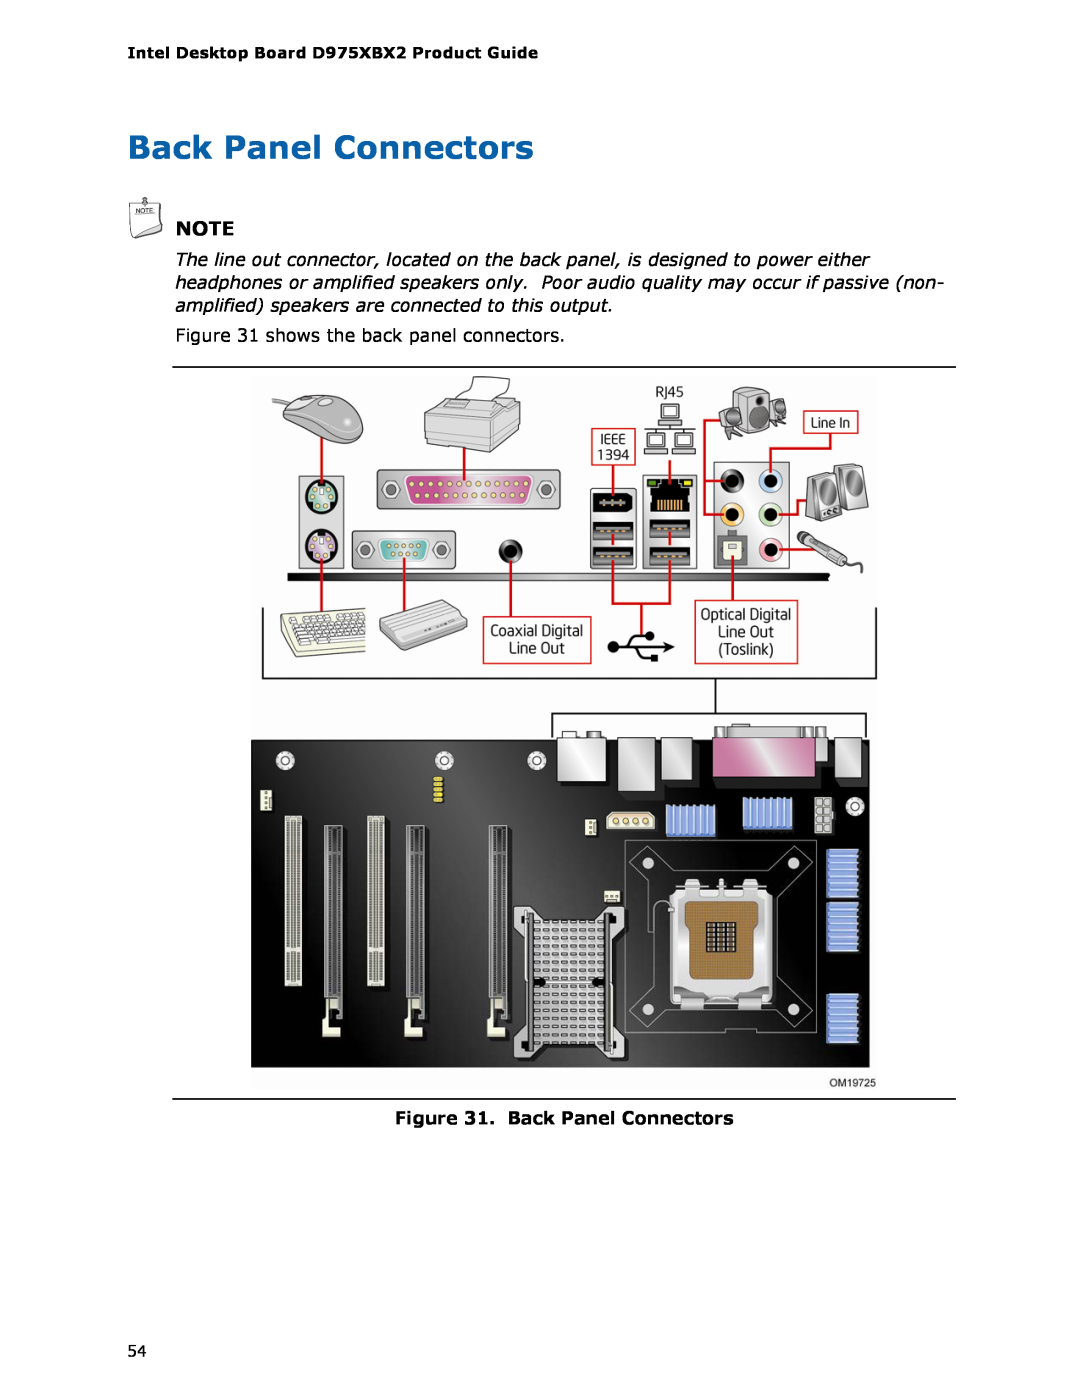 Intel D975XBX2 manual Back Panel Connectors 